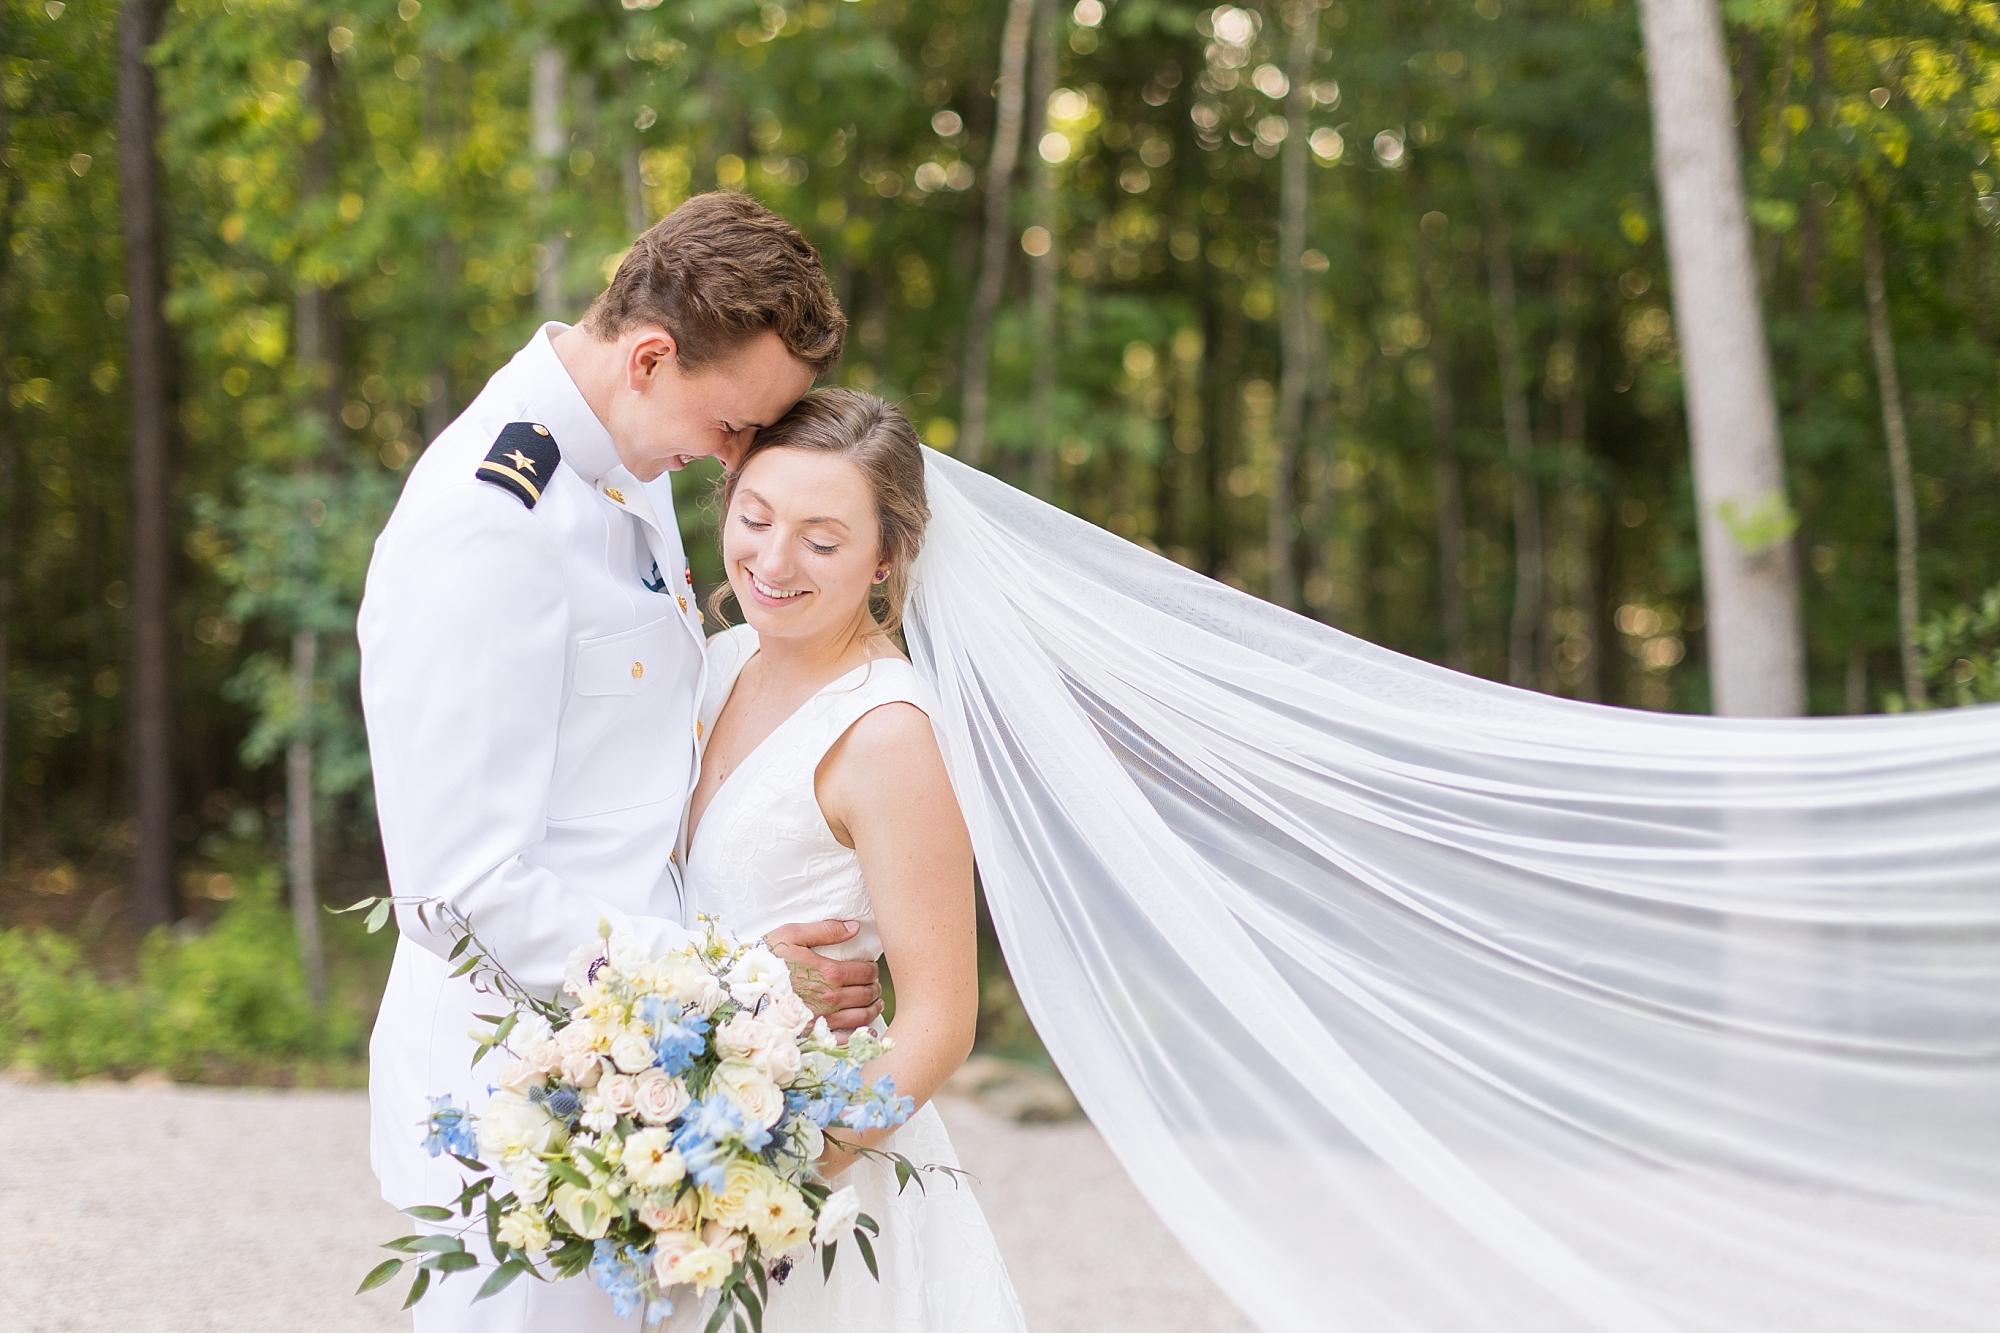 Spring wedding at Carolina Grove in Hillsborough NC | Raleigh Wedding Photographer | Sarah Hinckley Photography